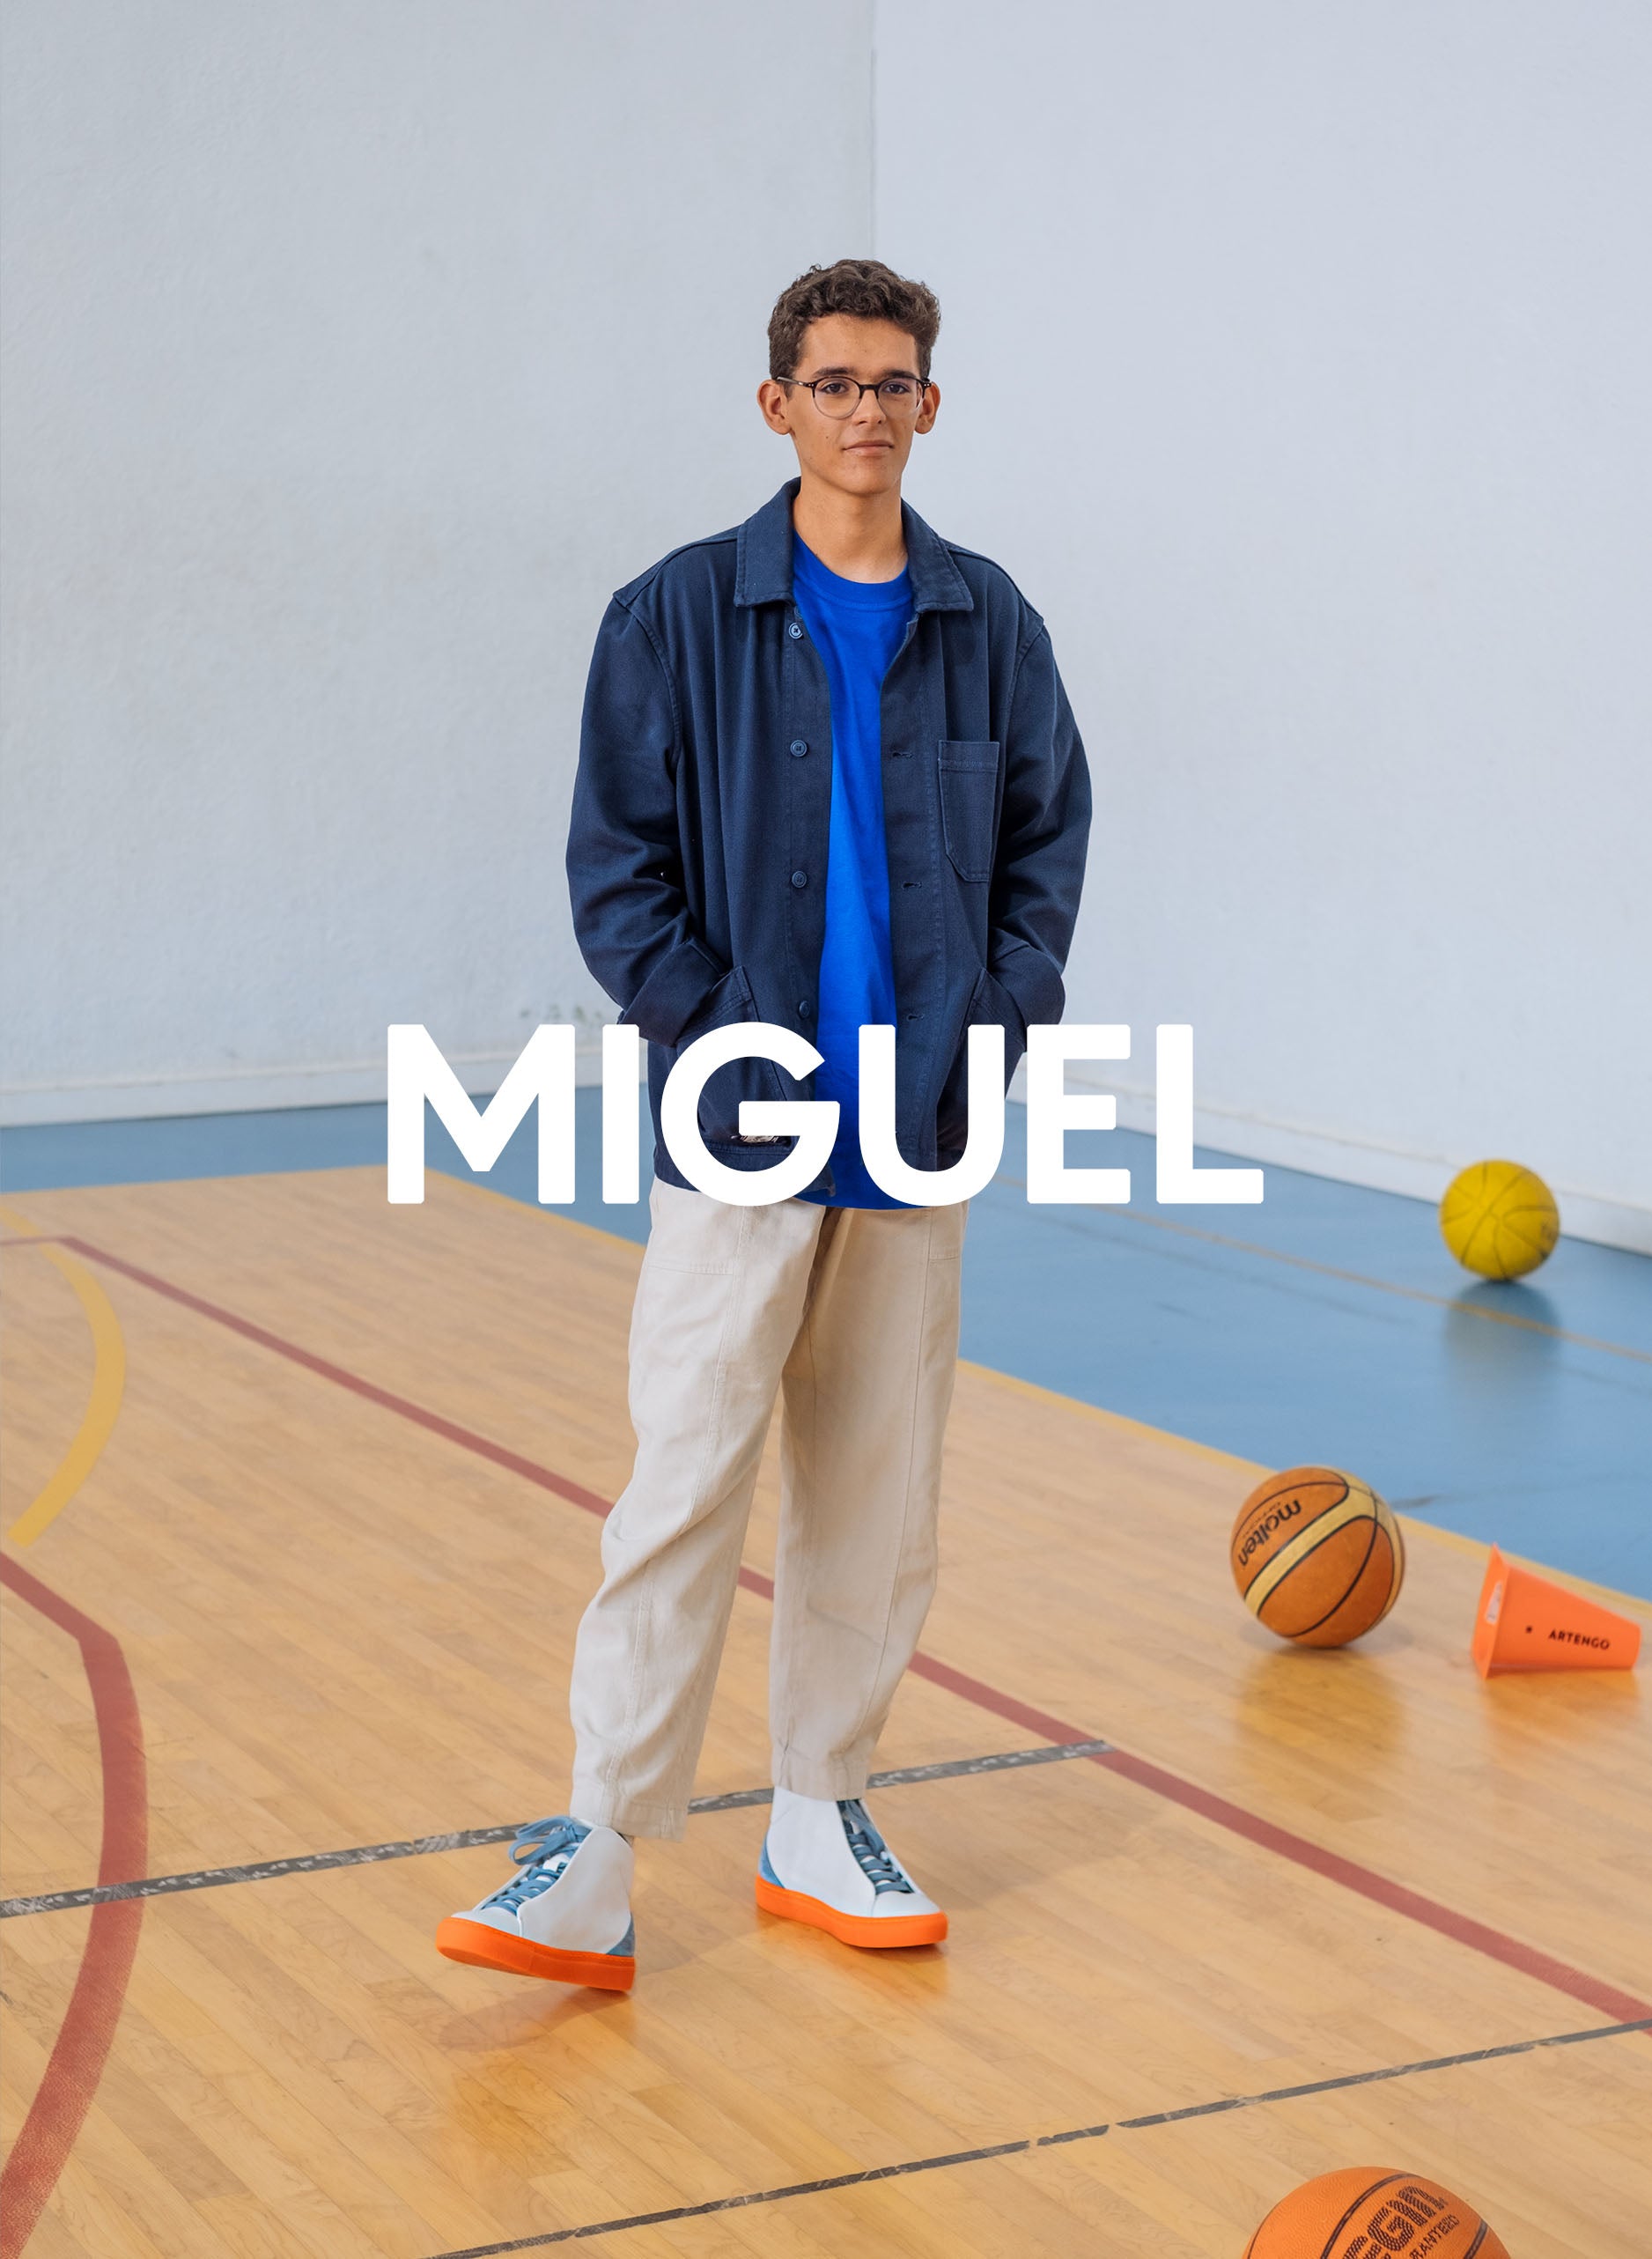 Miguel dans un gymnase vêtu d’une veste bleue, d’un pantalon beige et aussi diverge sneakers, promouvant l’impact social et les chaussures personnalisées à travers le projet Imagine.